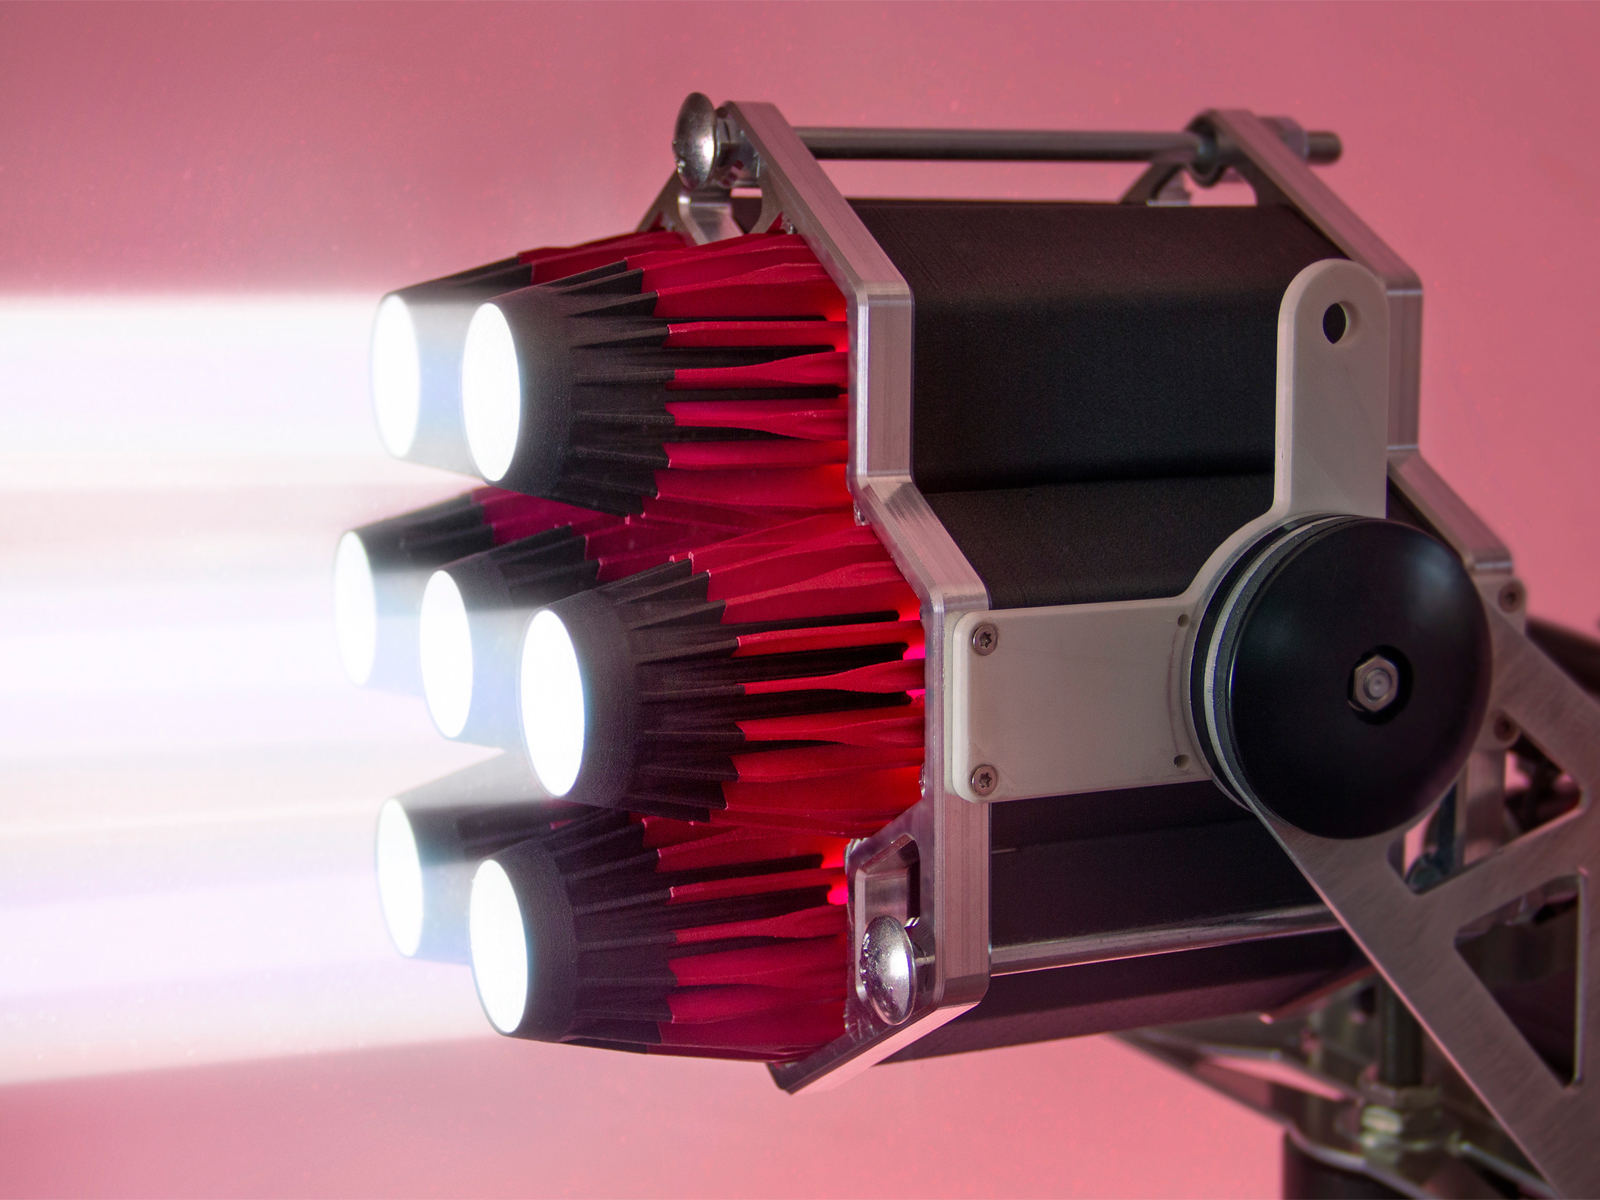 Sumolight Sumolaser: A laser spotlight as bright as an 18-kW HMI spotlight